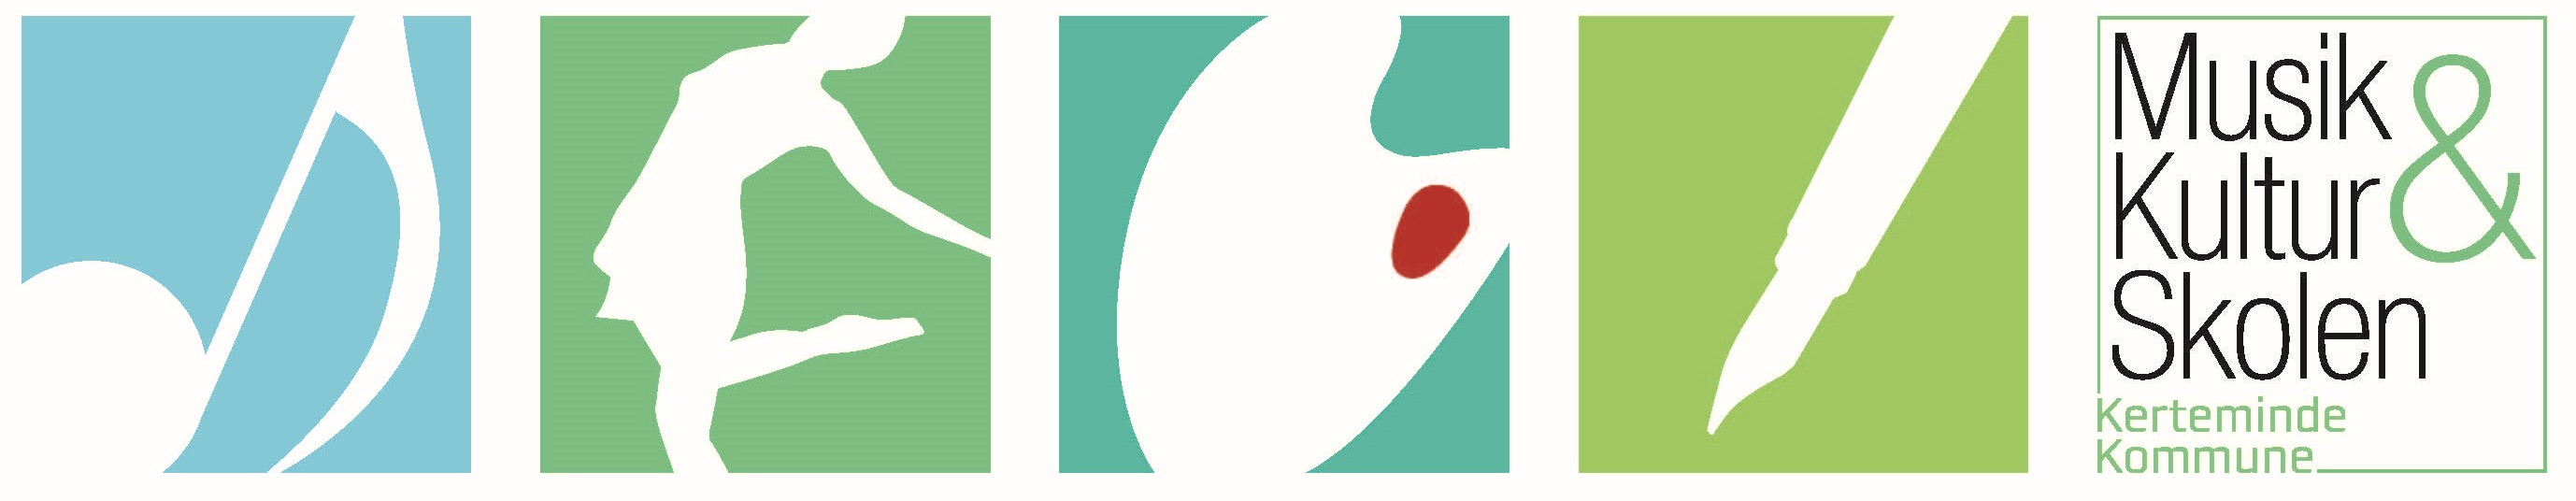 Musik- og Kulturskolen Kerteminde Kommune Logo